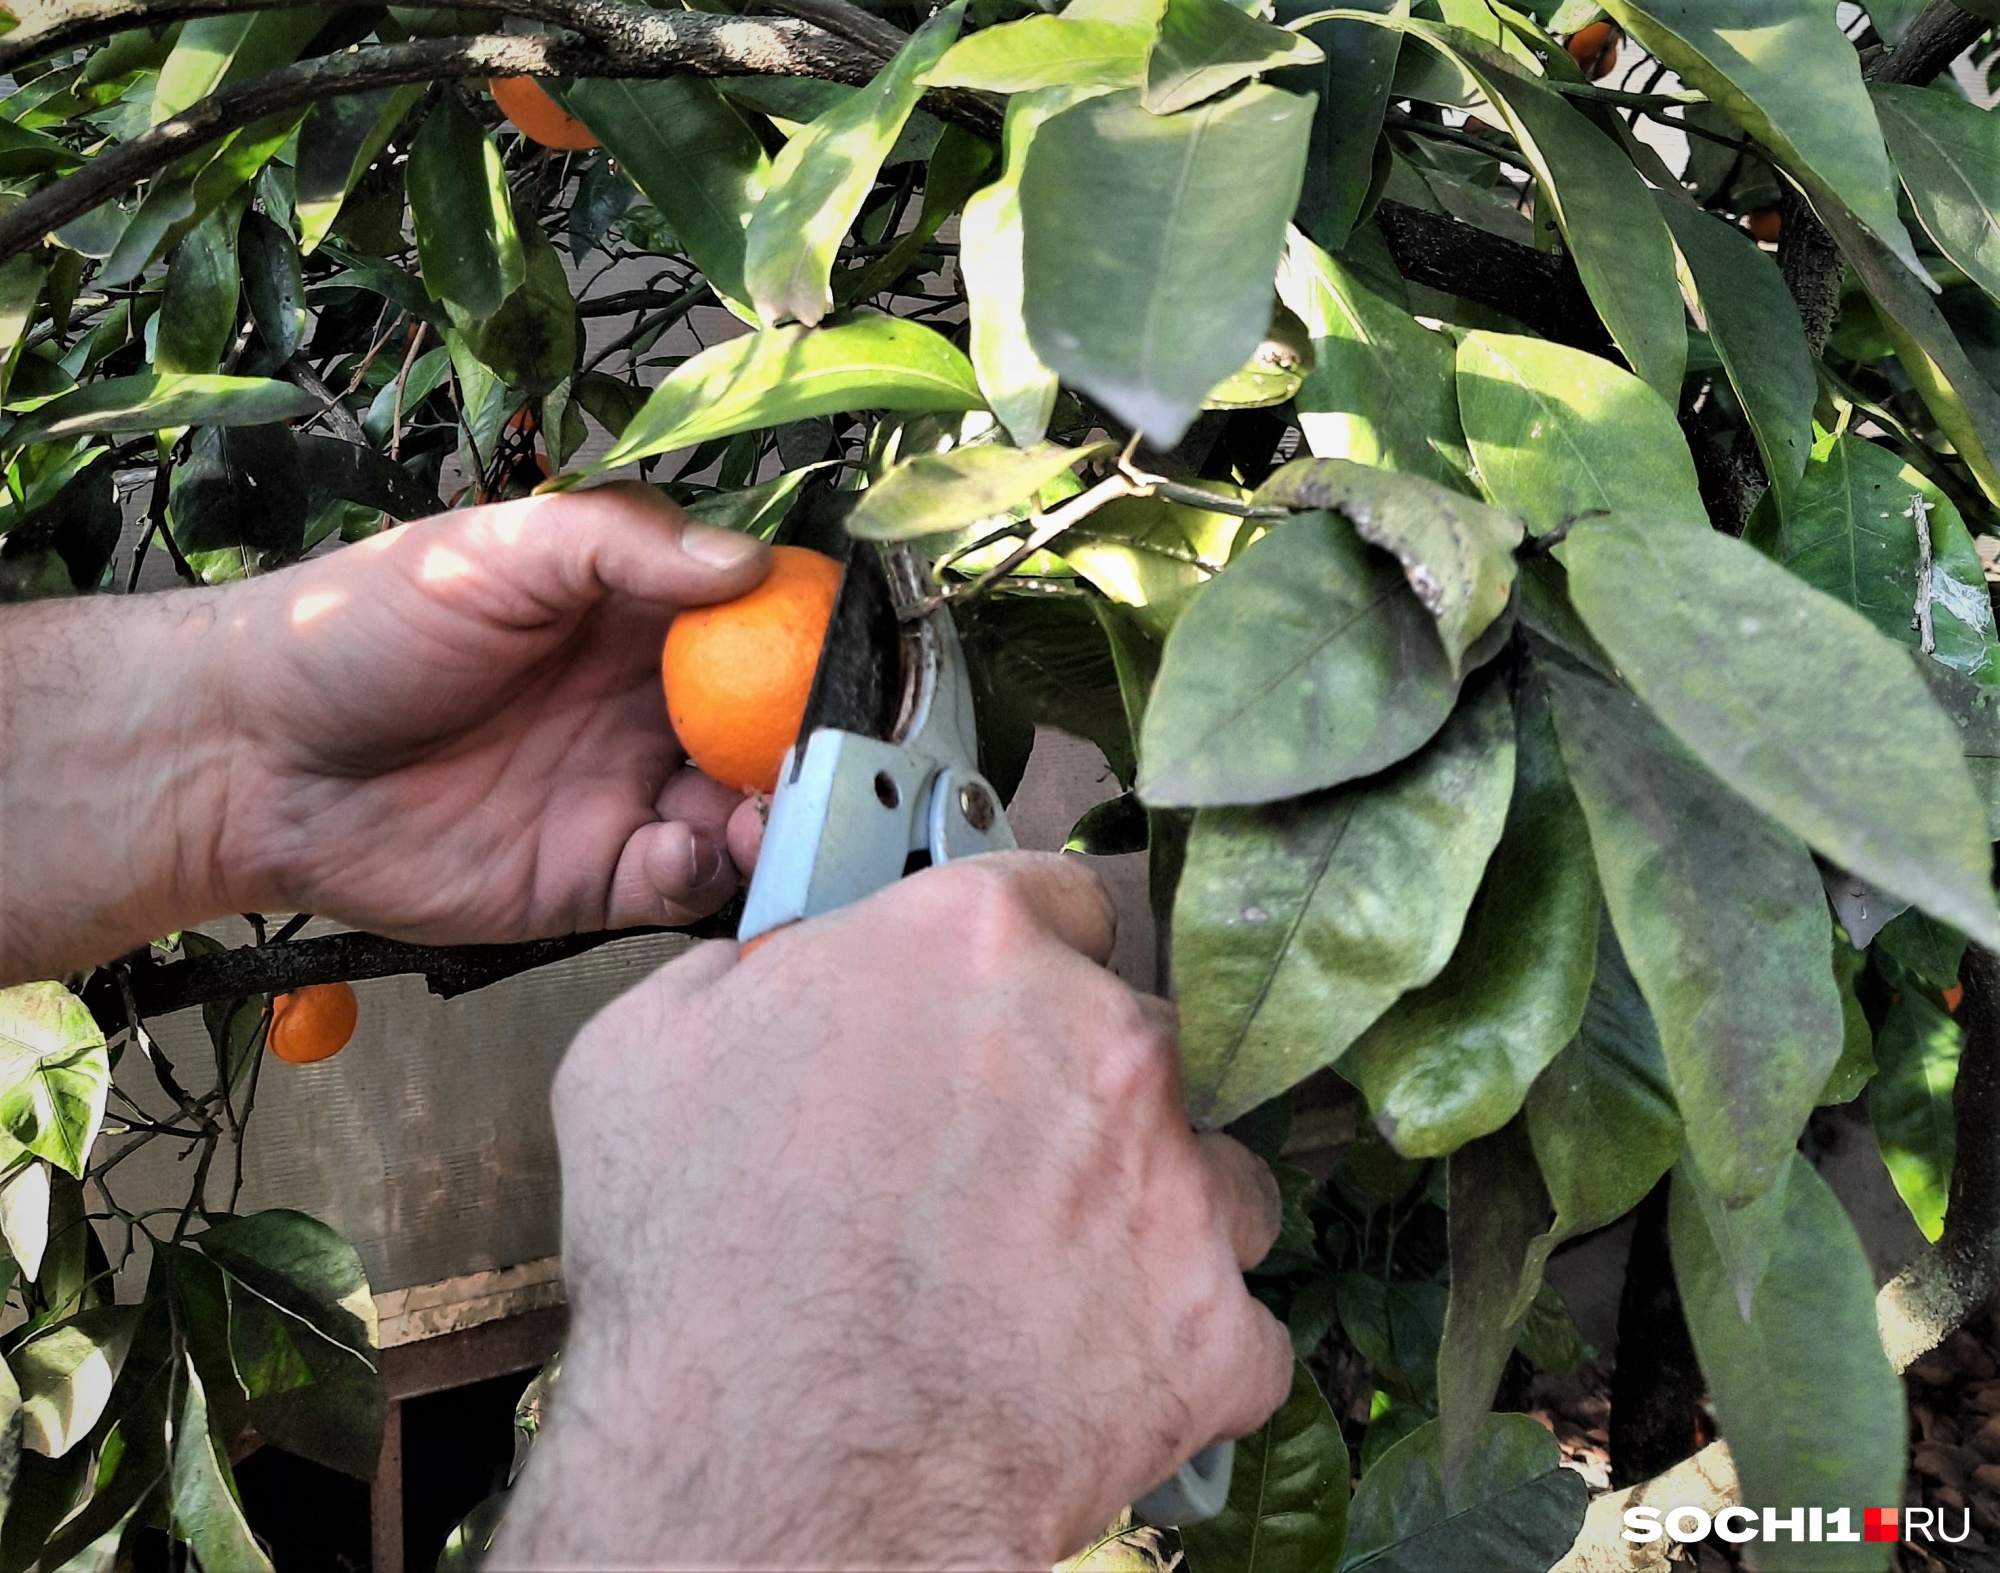 Срезать мандарины можно только секатором, иначе можно повредить плод — и он испортится